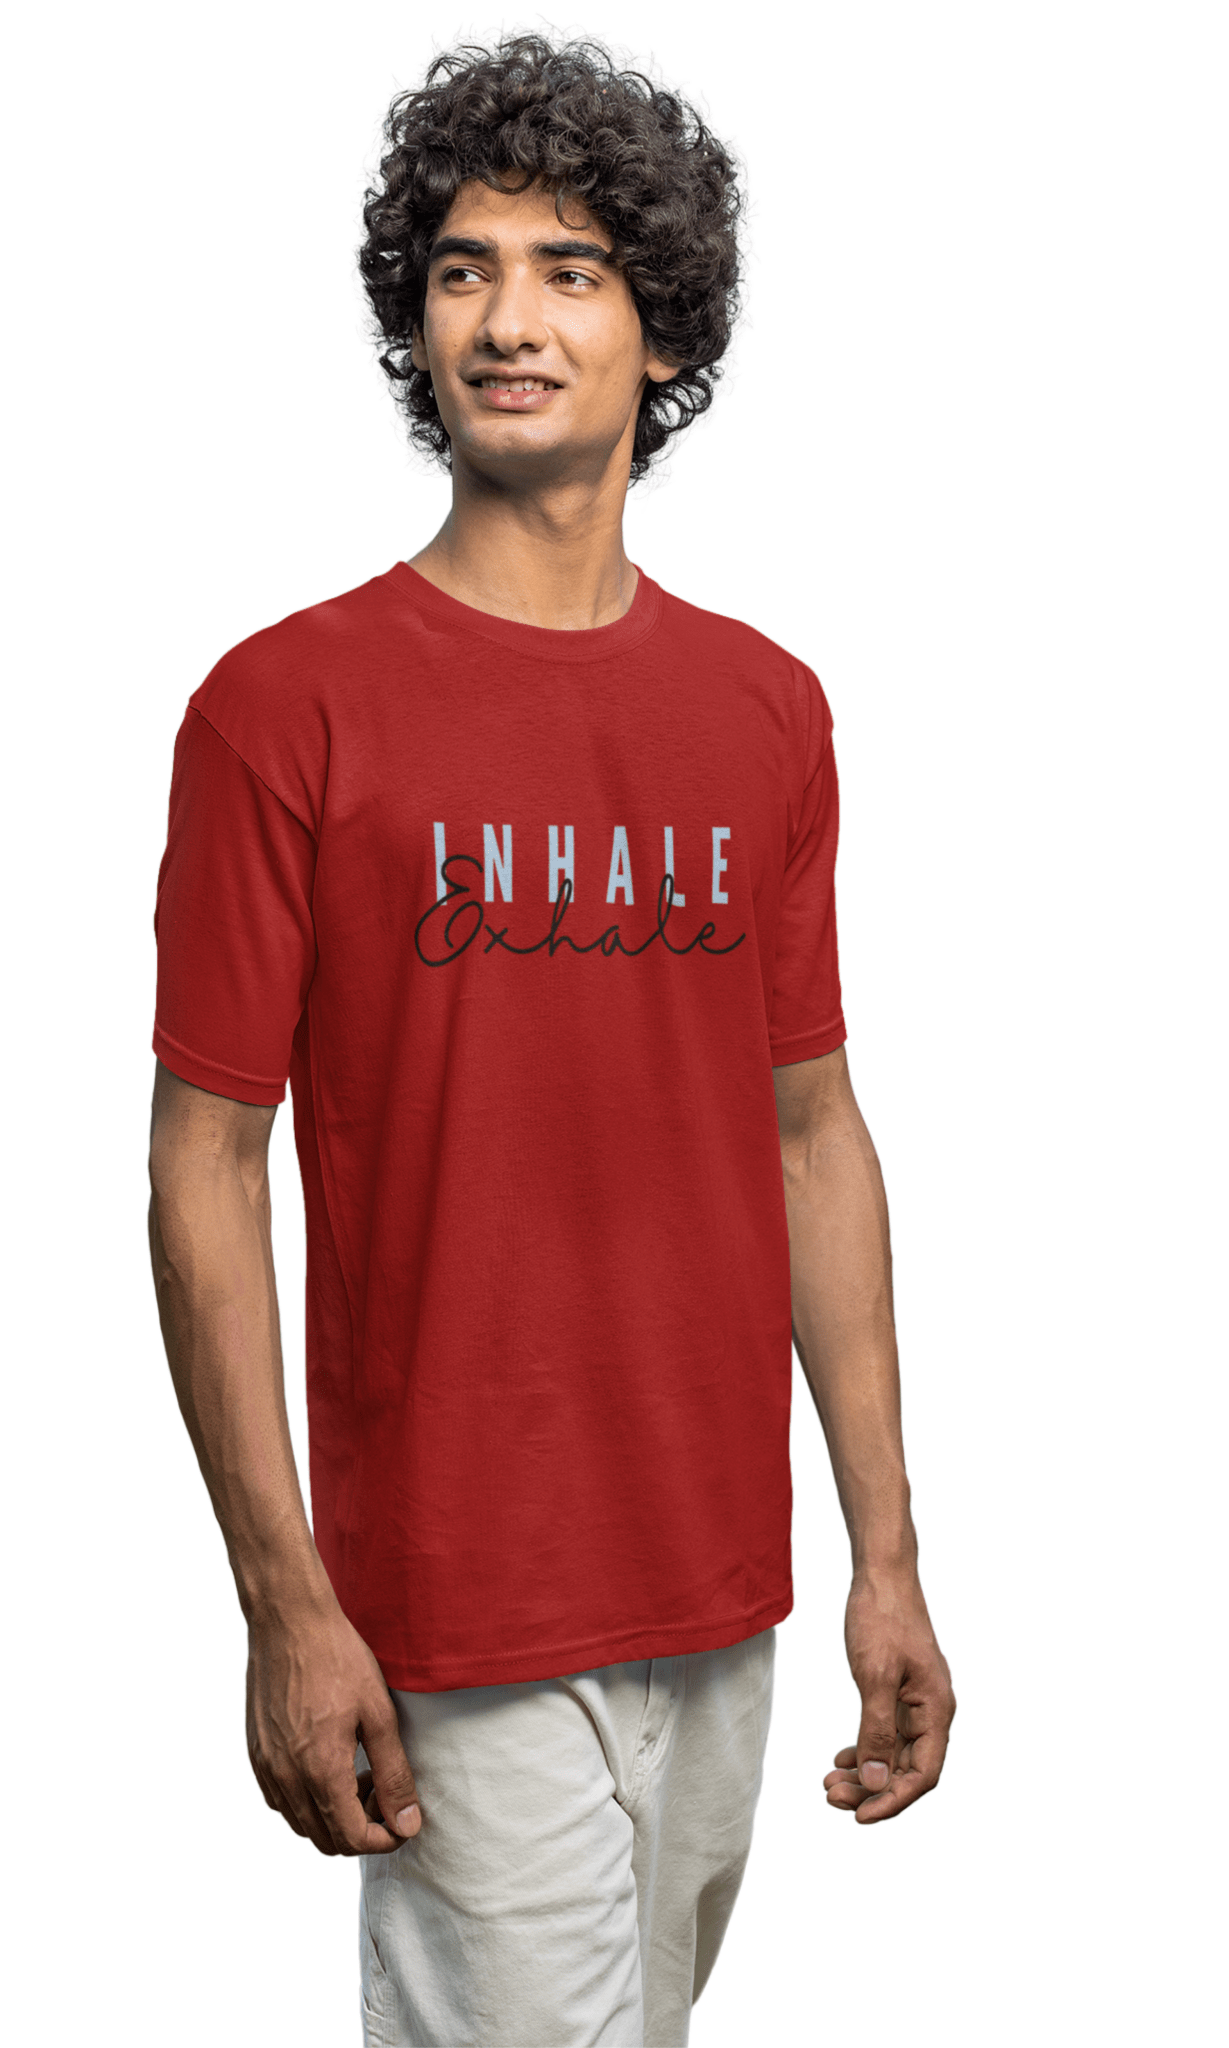 Inhale Regular Men's T-Shirt